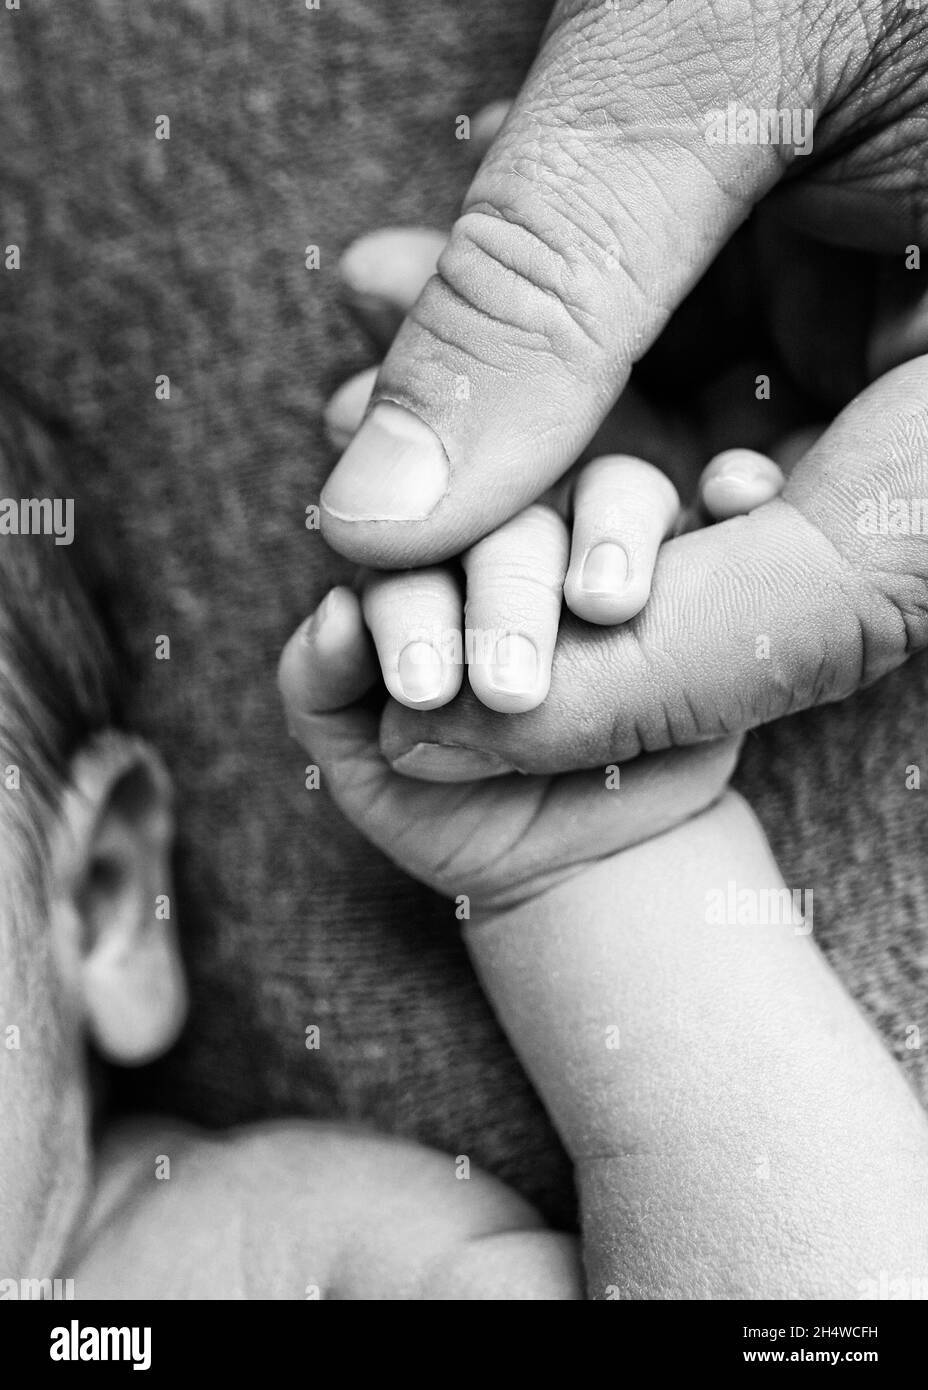 Un nouveau-né tient avec sa main, les doigts de la main, les doigts d'un parent, d'un père ou d'une mère.Photo en noir et blanc. Banque D'Images